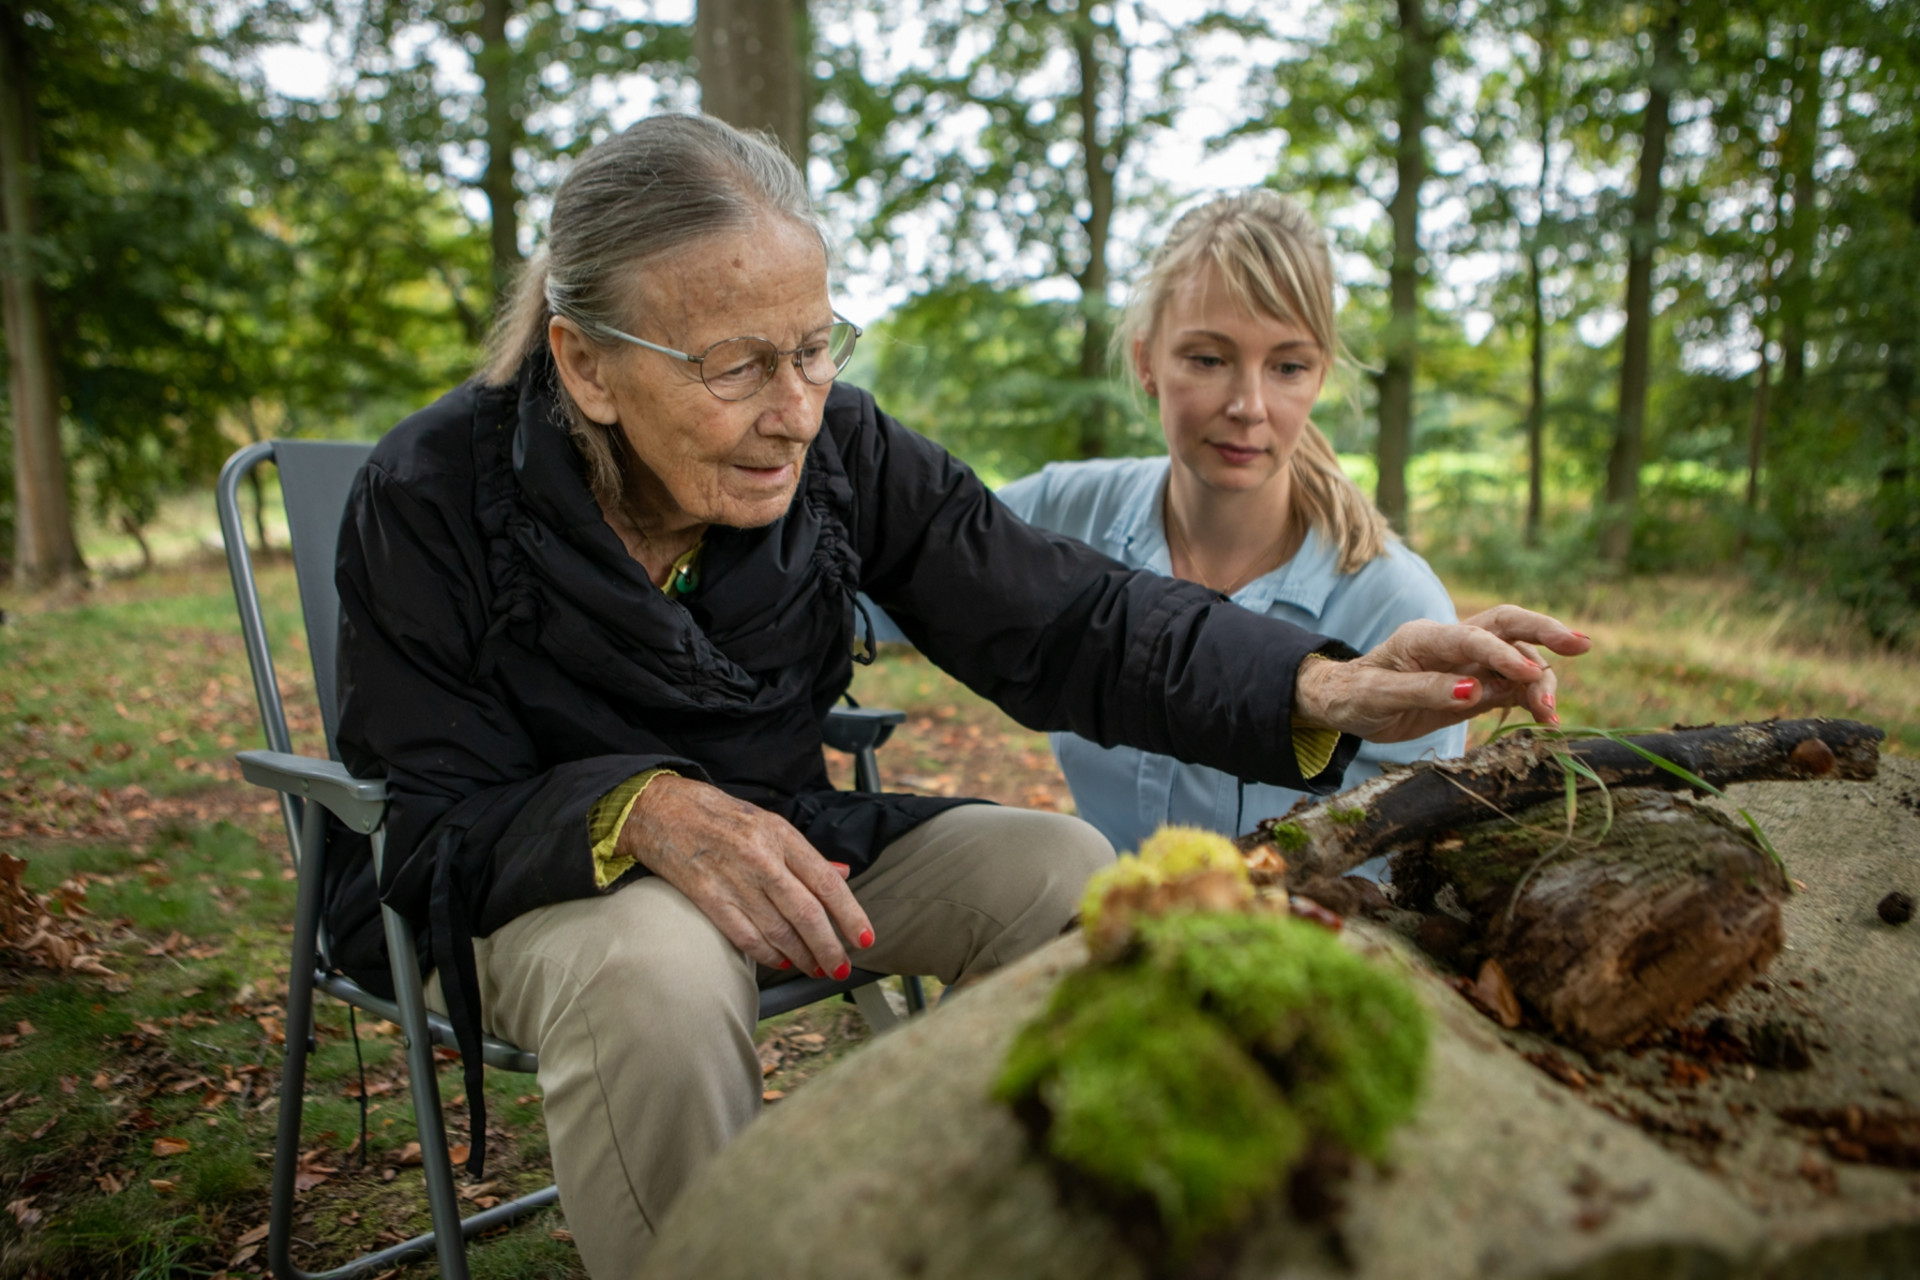 Naturerlebnisse gehören in Nordseeland zum Alltag: Grethe mit Pflegerin May © ZDF/Per Fredrik Skiöld